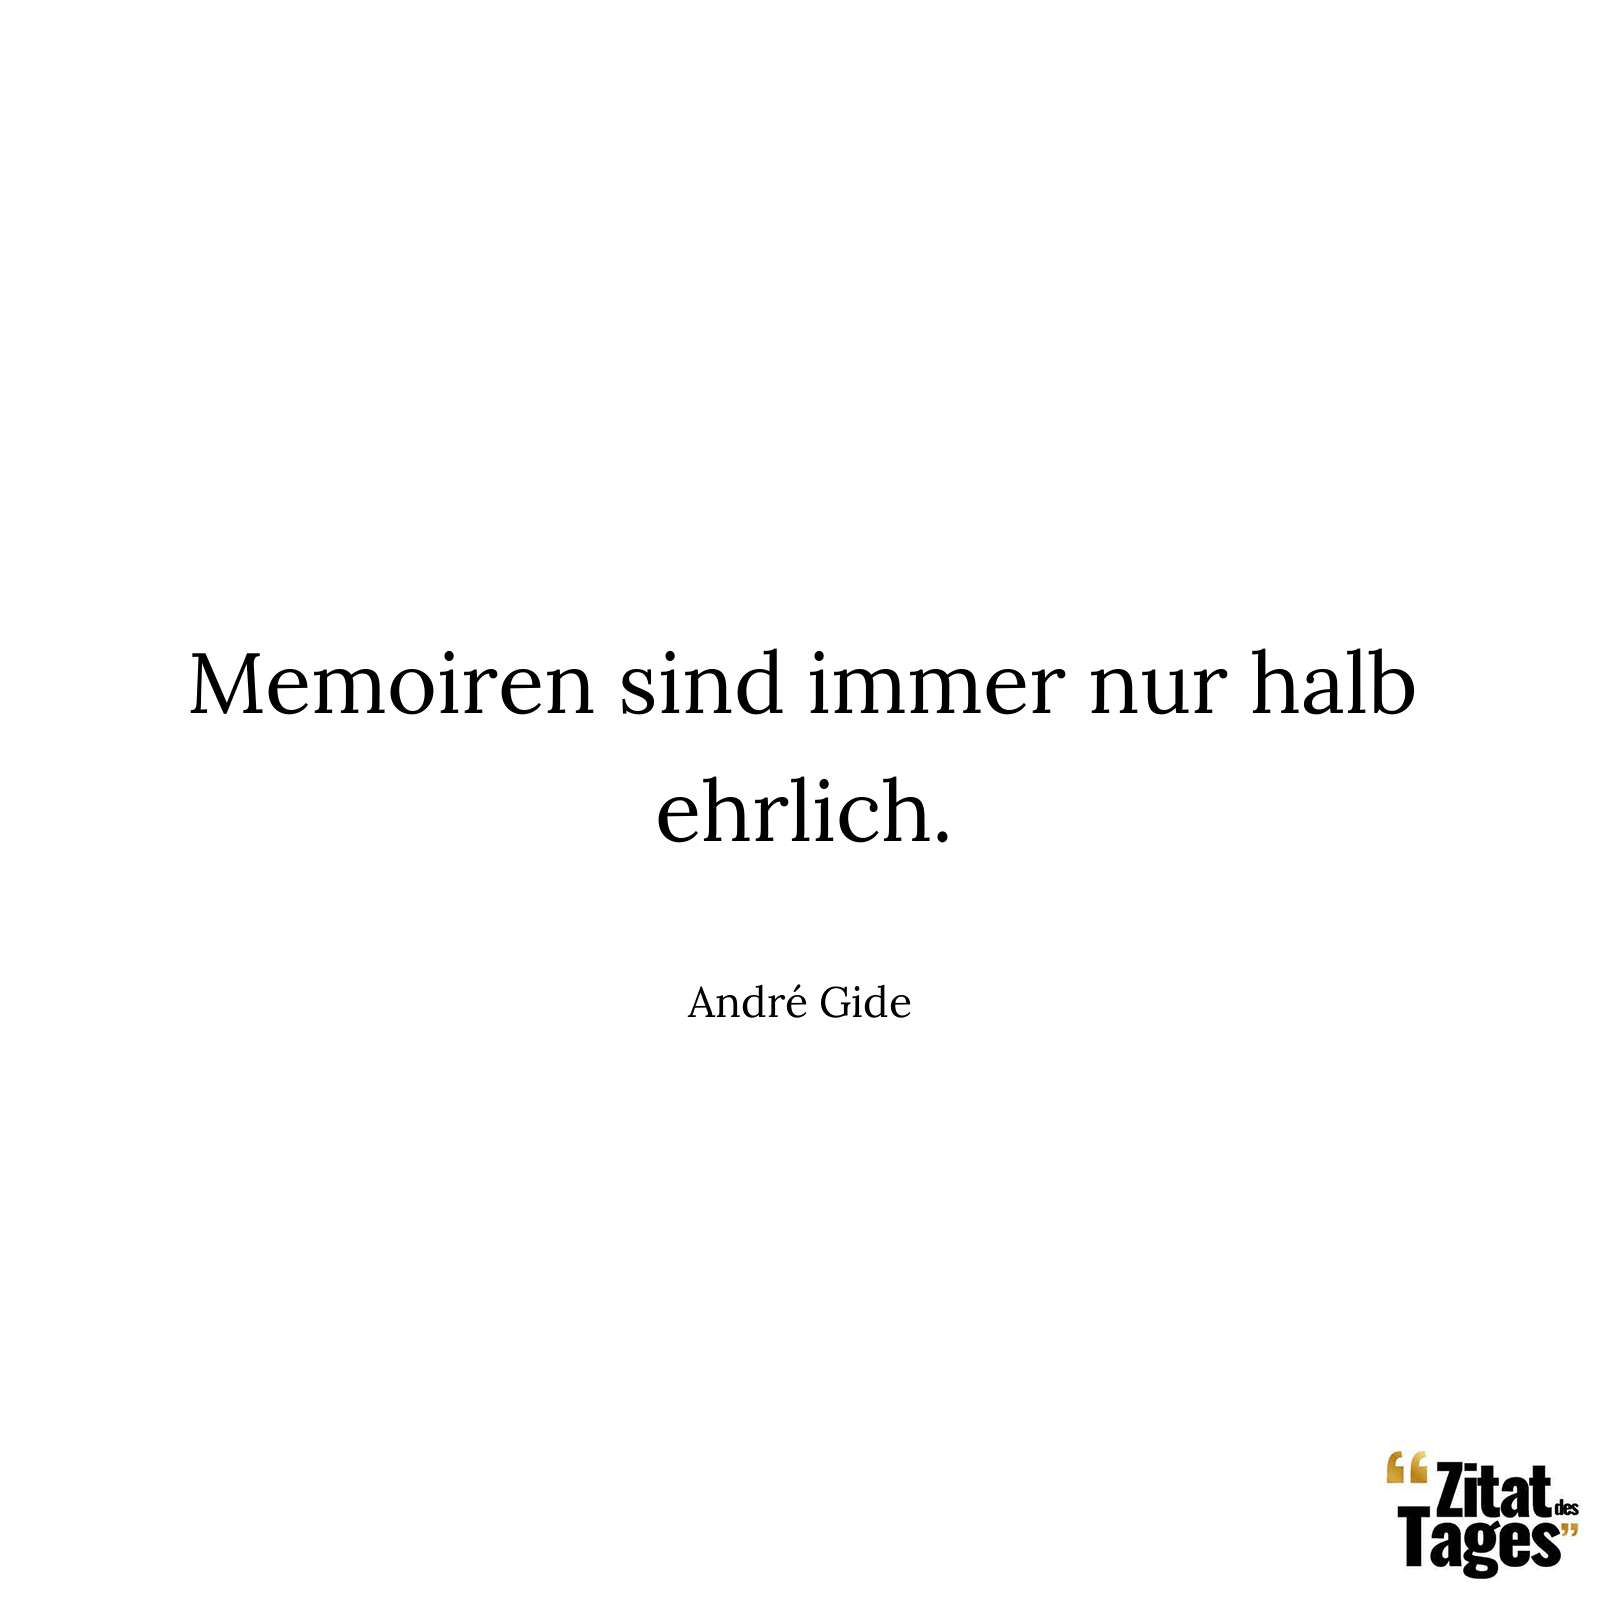 Memoiren sind immer nur halb ehrlich. - André Gide